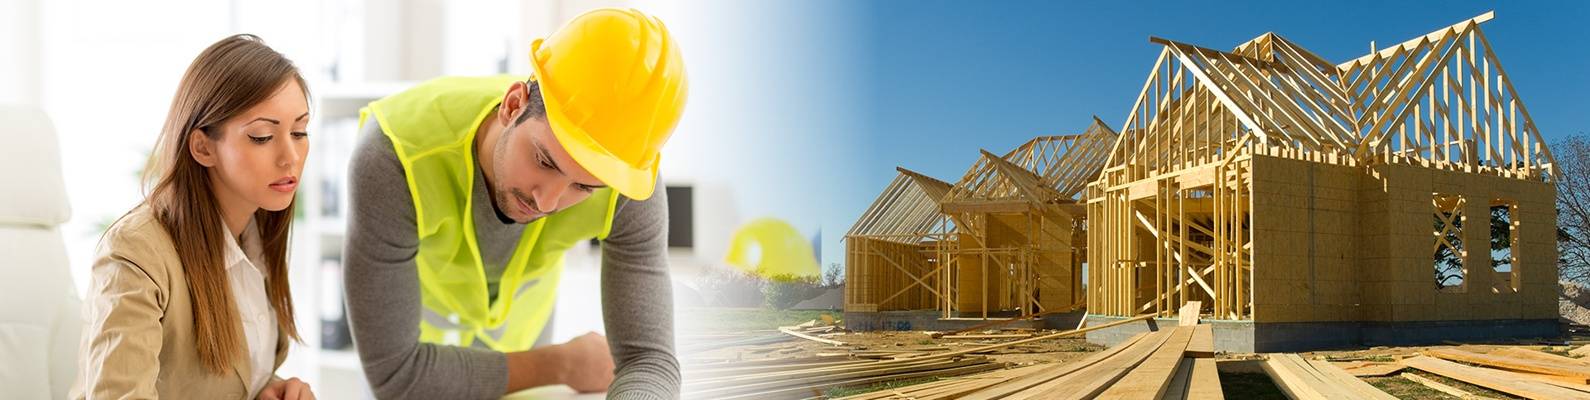 Строительство дома без ошибок: полезные советы застройщиков